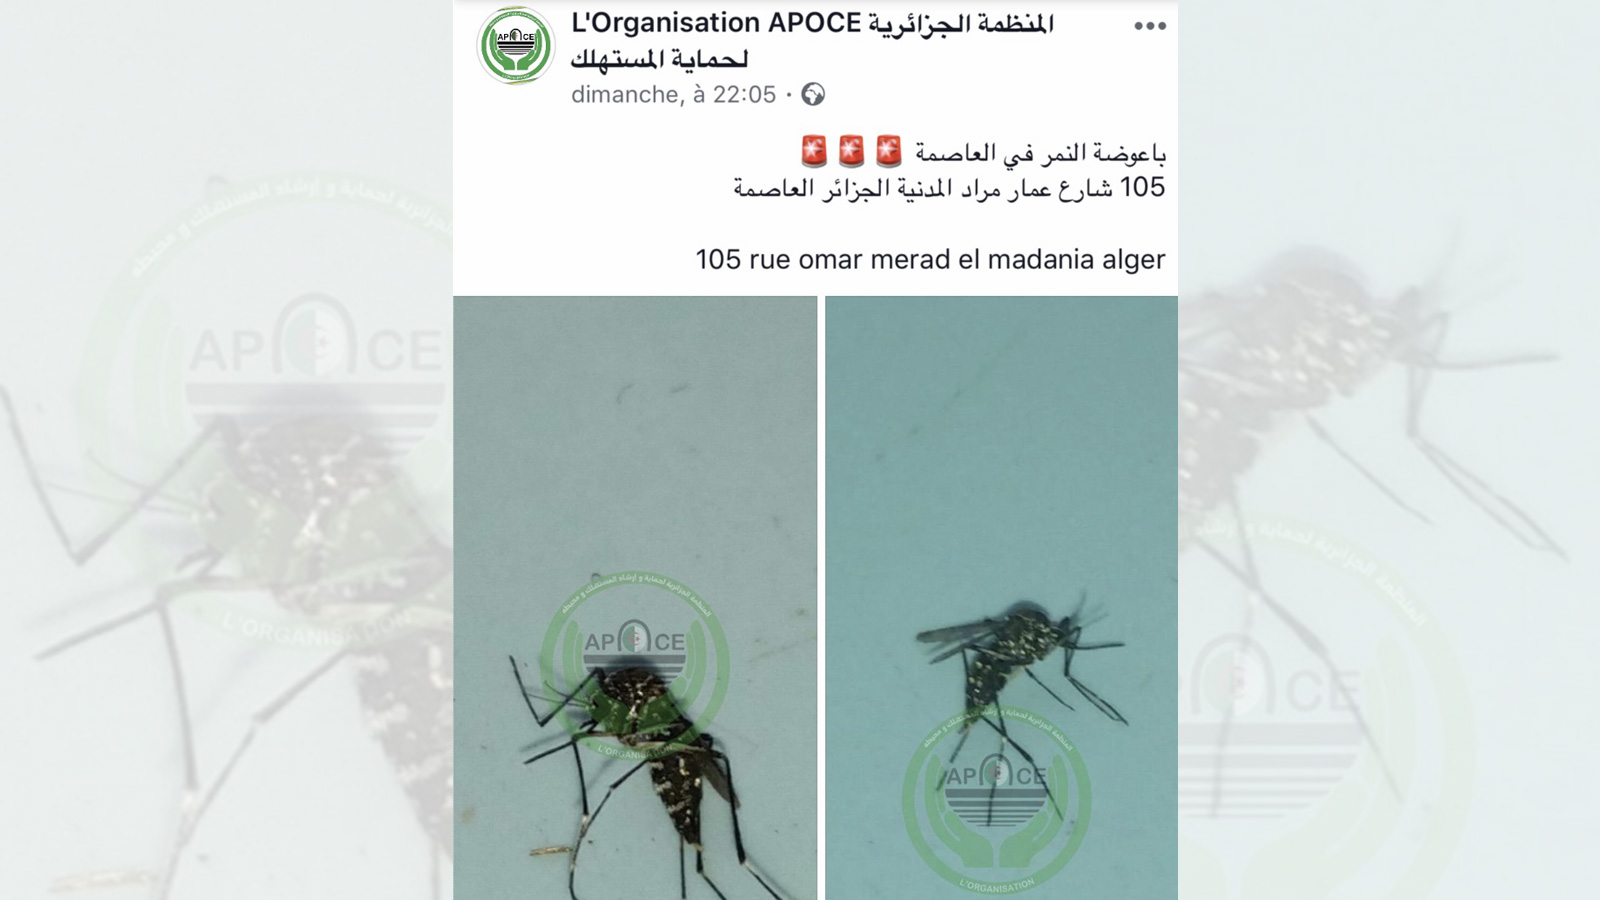 المنظمة الجزائرية لحماية المستهلك تحذر الجزائريين عبر صفحتها الرسمية في فيسبوك من انتشار بعوض النمر بالعاصمة (مواقع التواصل)